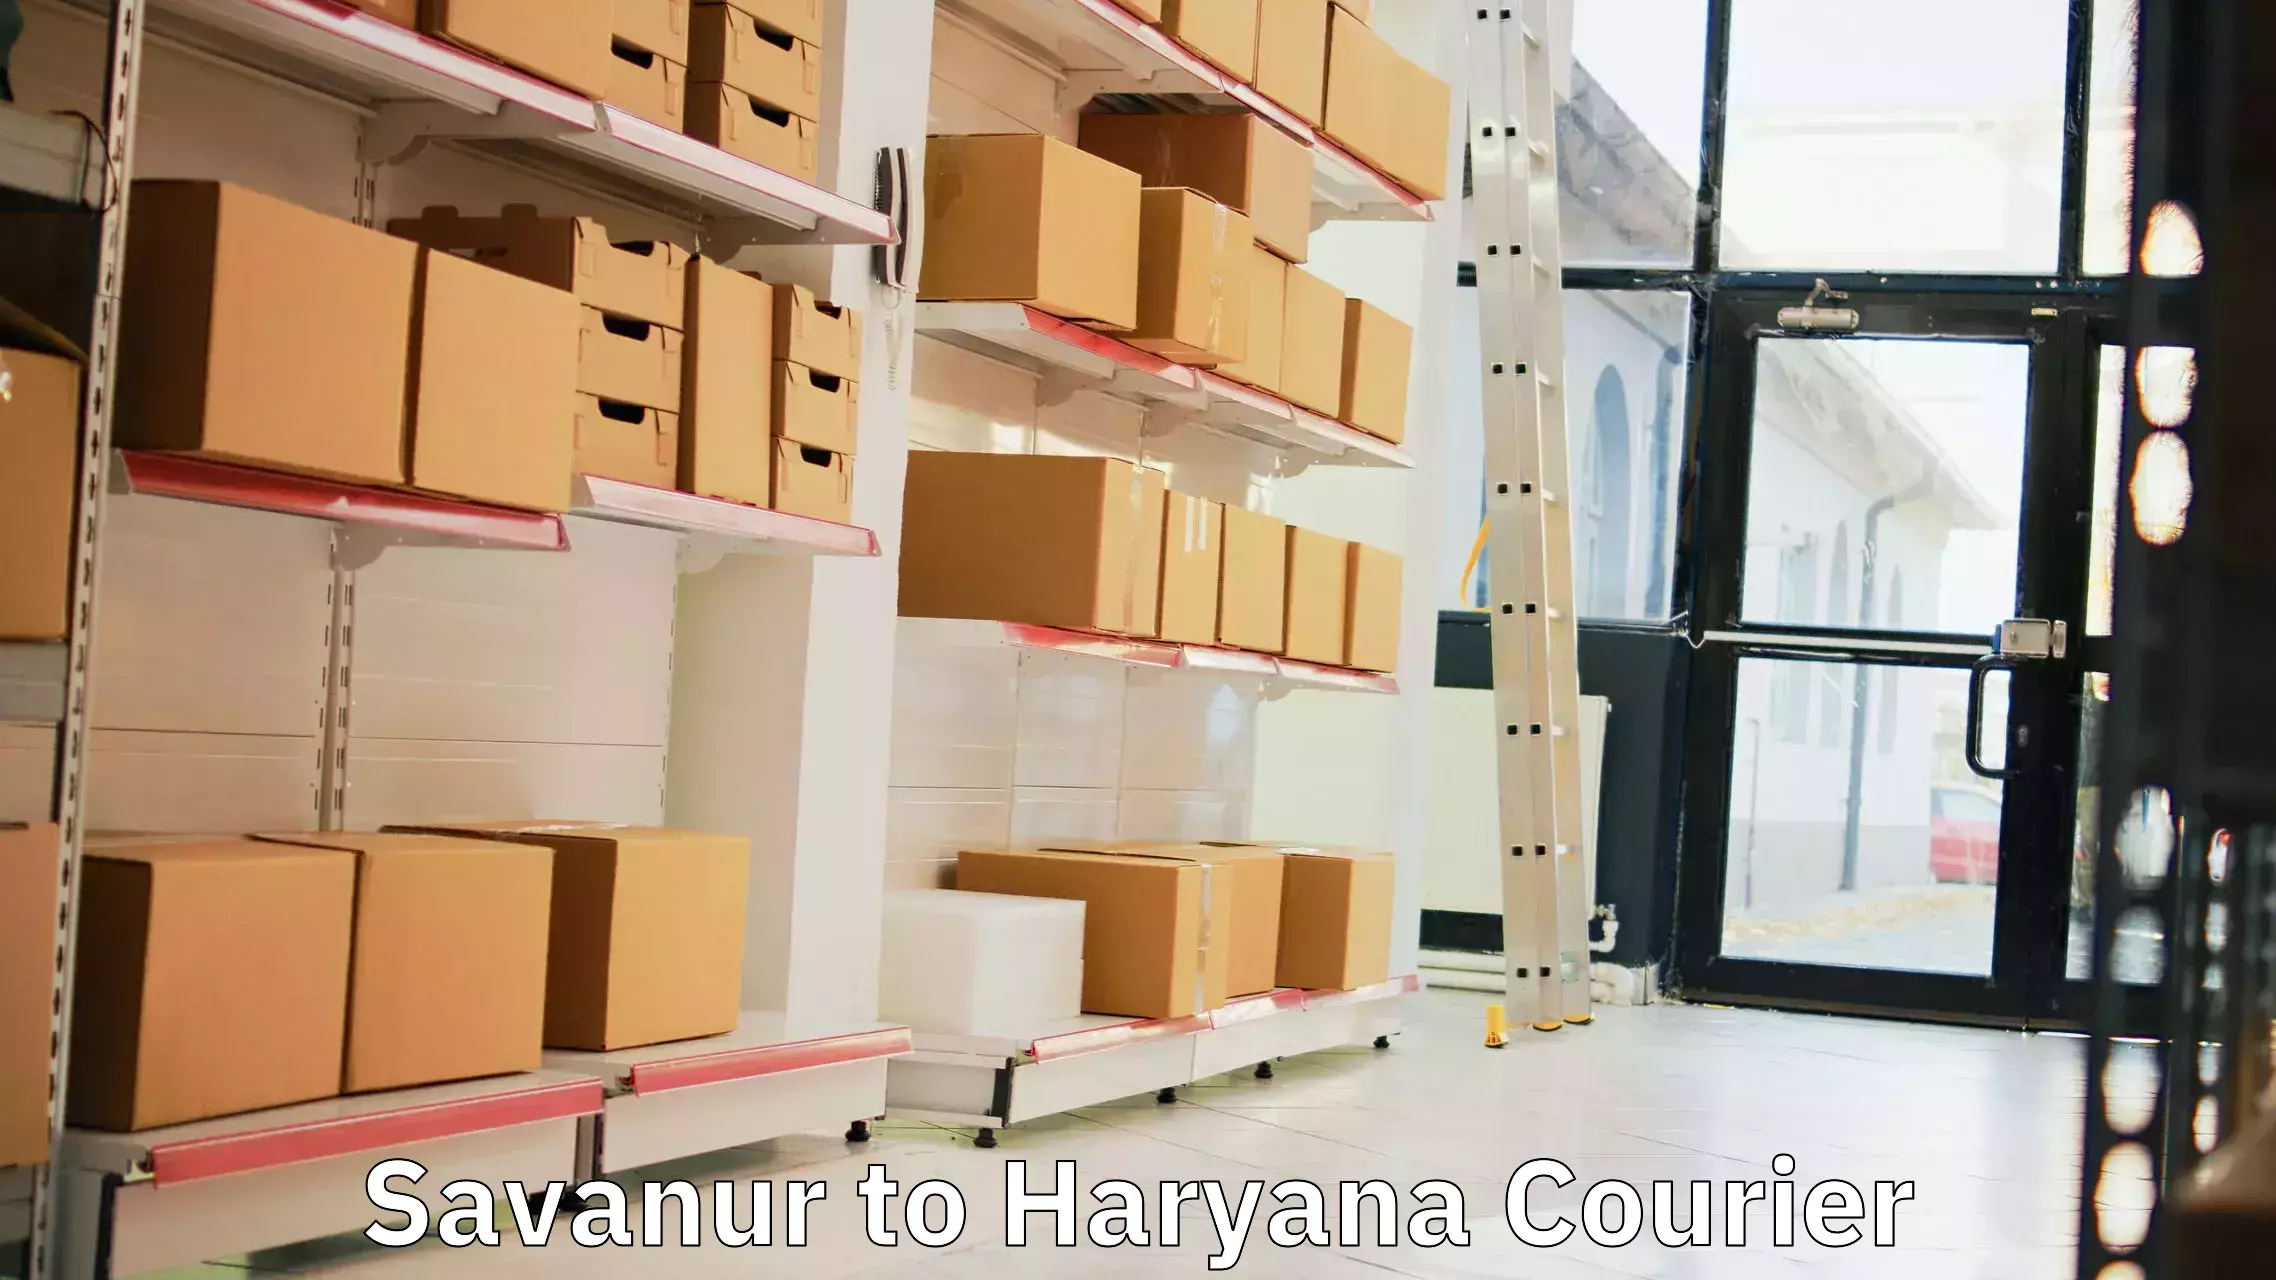 Door-to-door freight service Savanur to Kurukshetra University